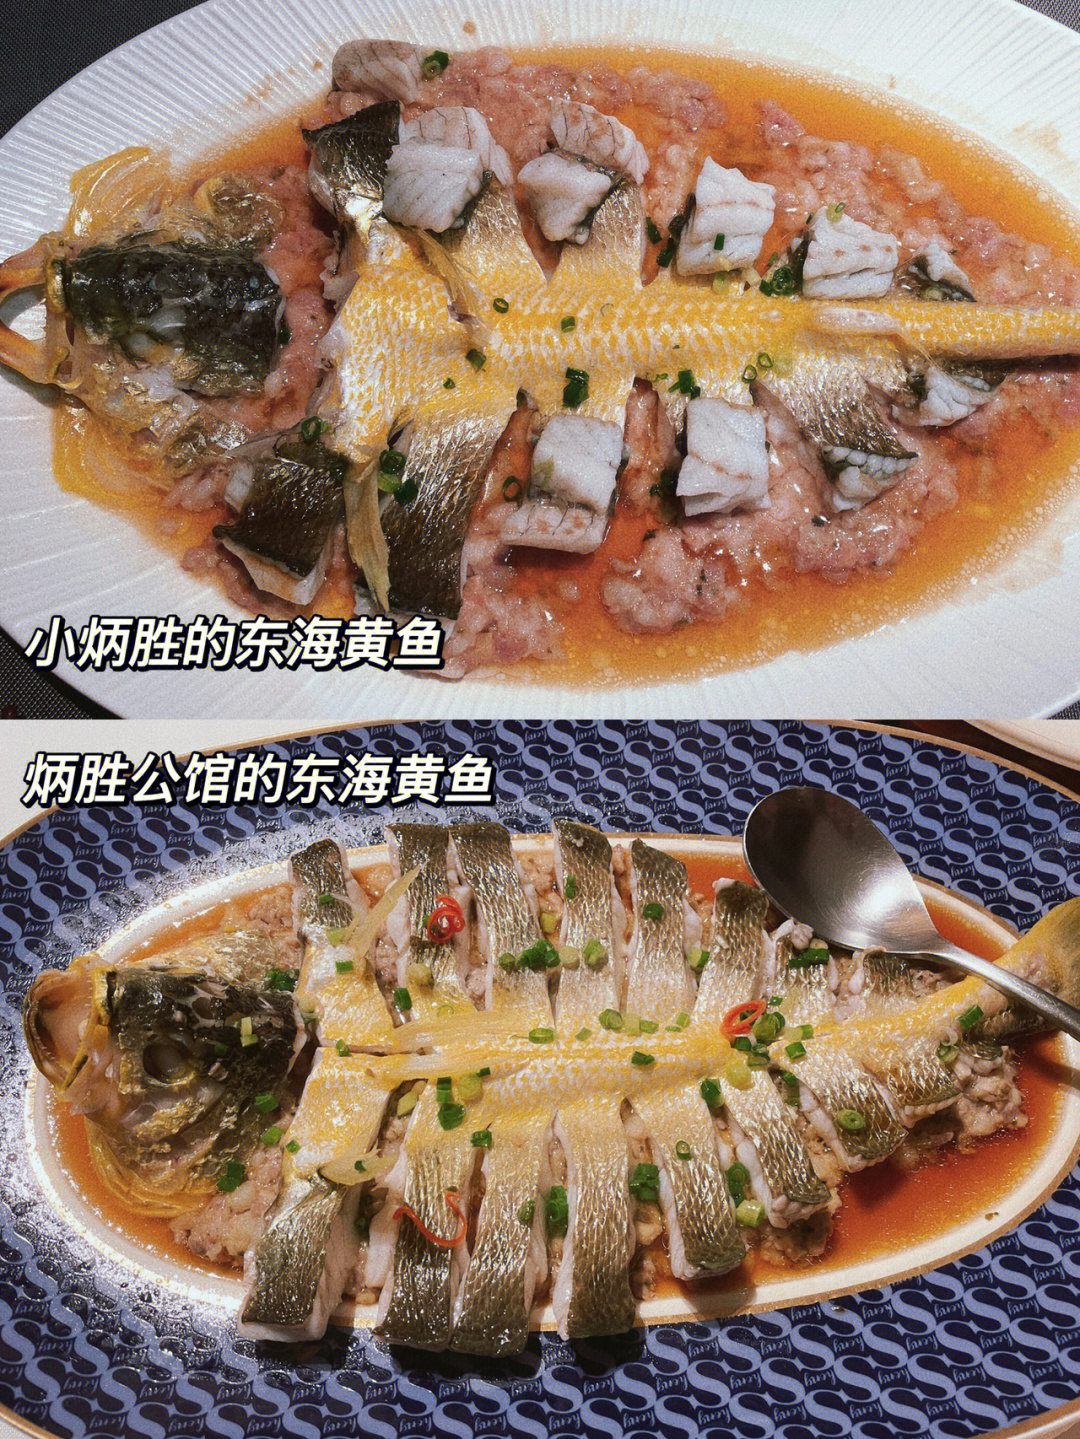 炳胜公馆一毛一样的招牌菜95东海黄鱼(看菜单图片真的是没有一点